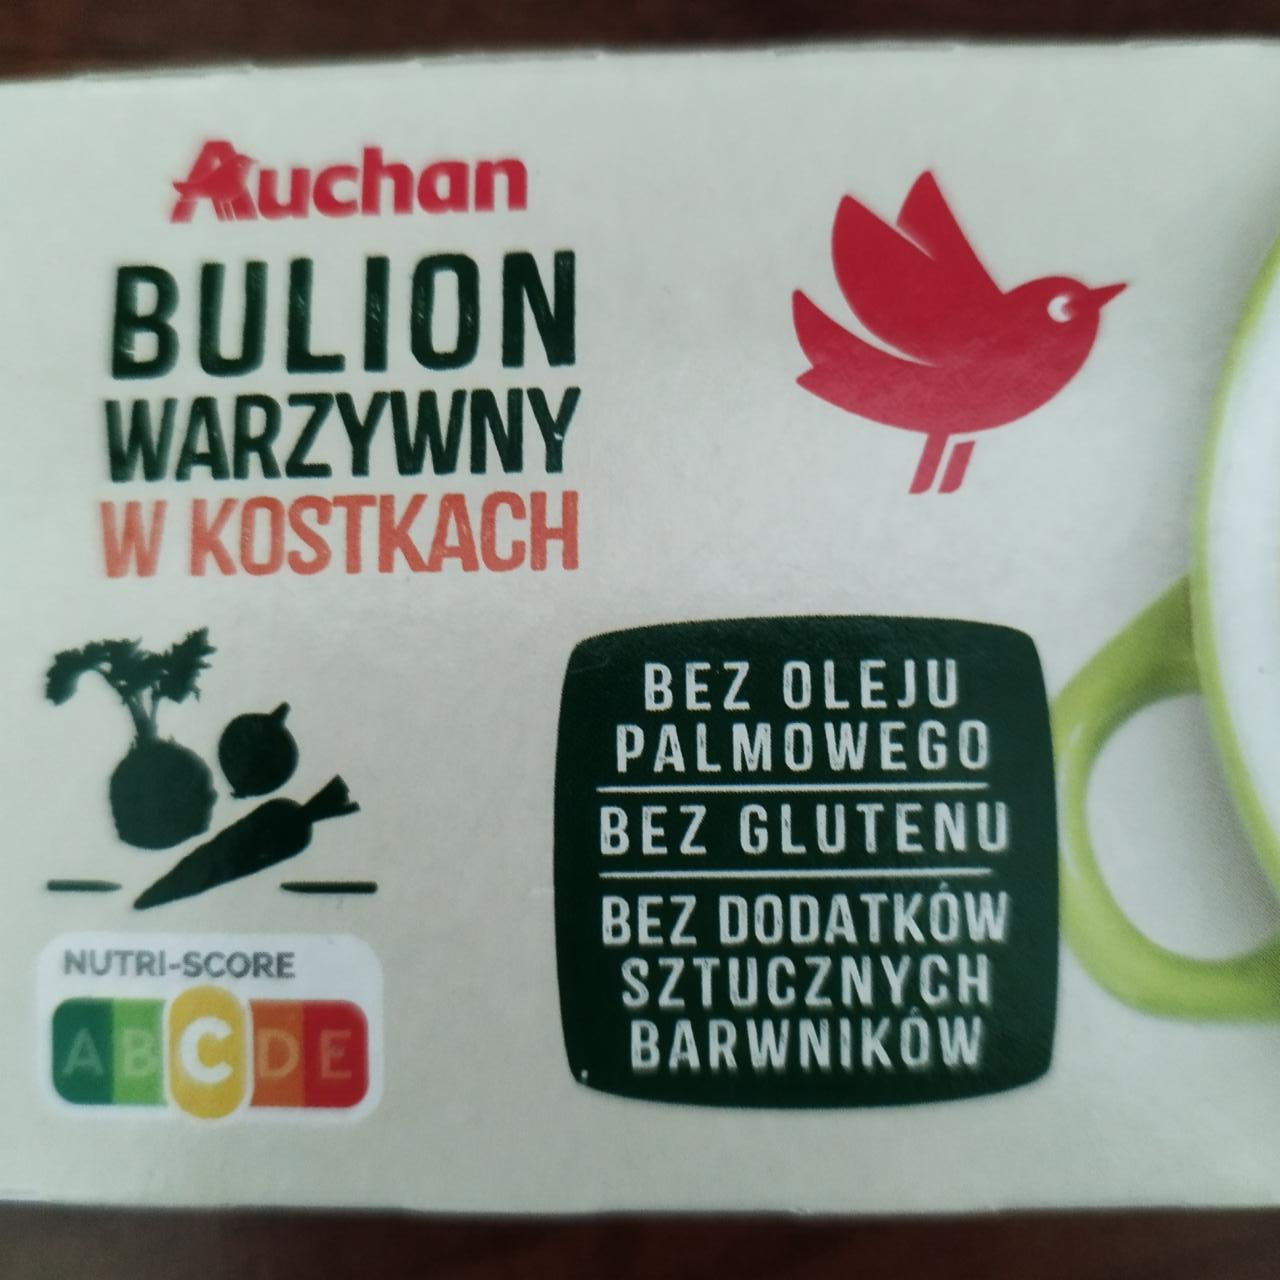 Zdjęcia - Bulion warzywny w kostkach Auchan